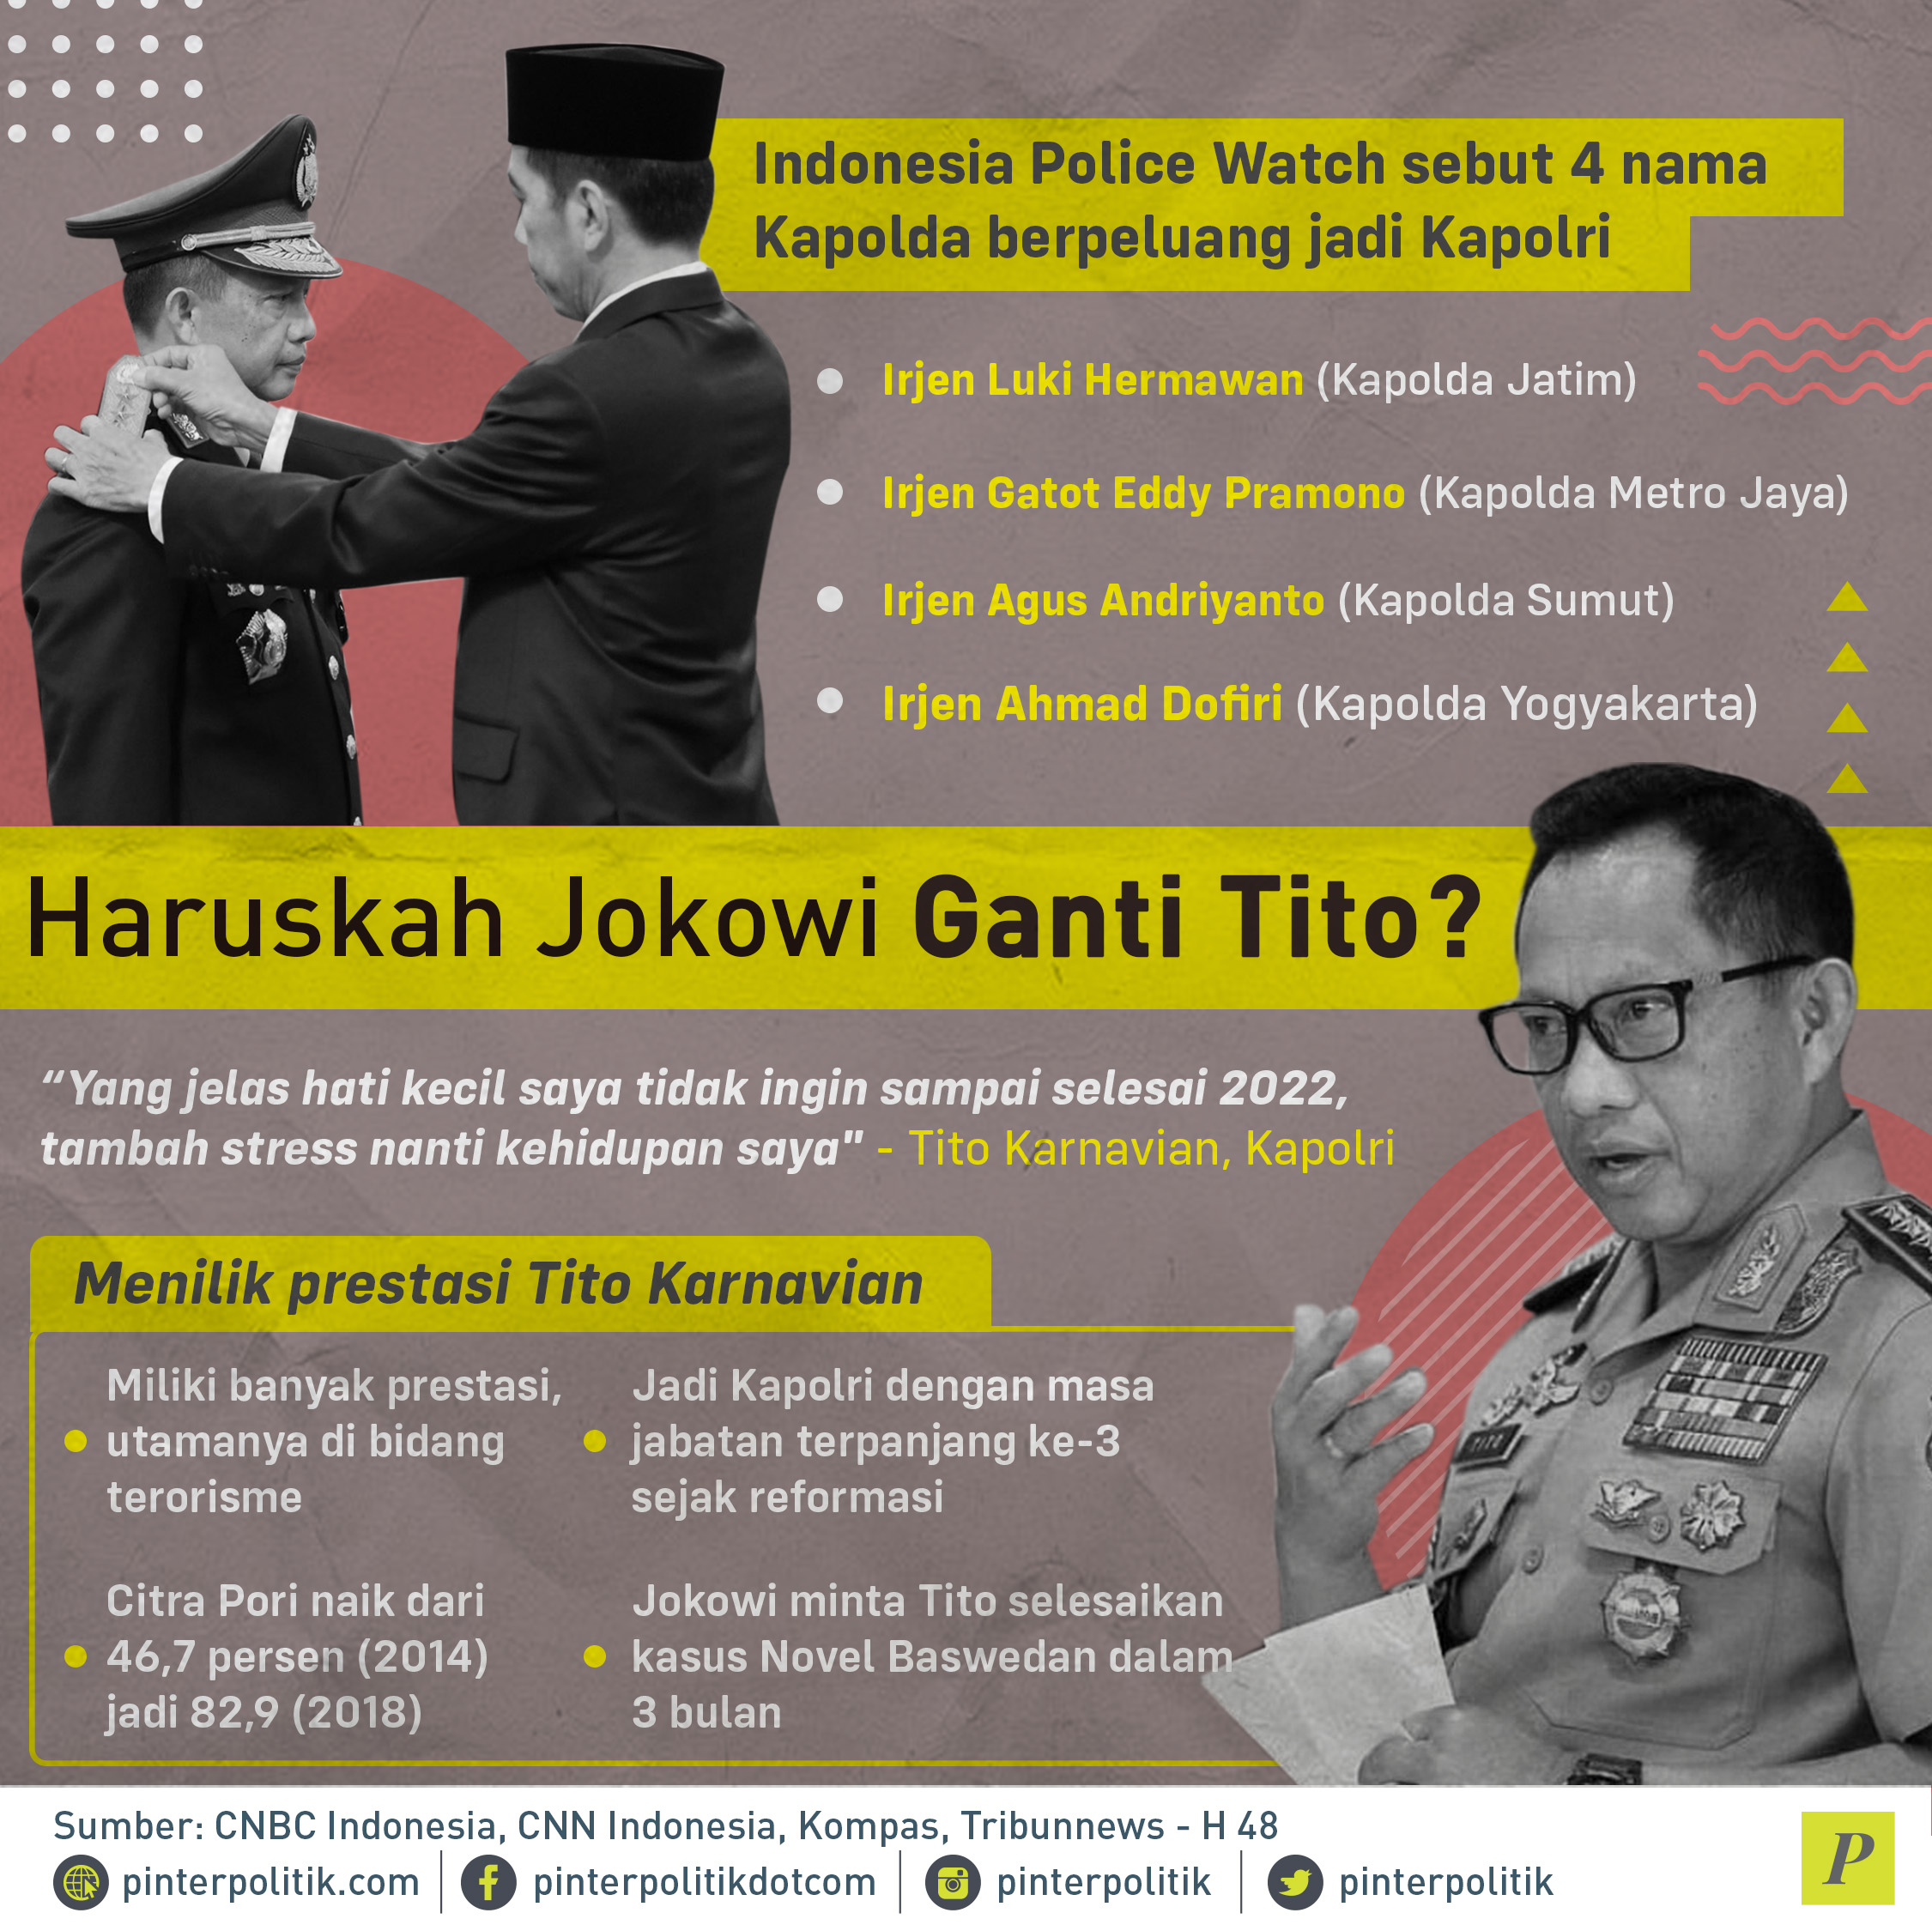 Jokowi Ganti Tito